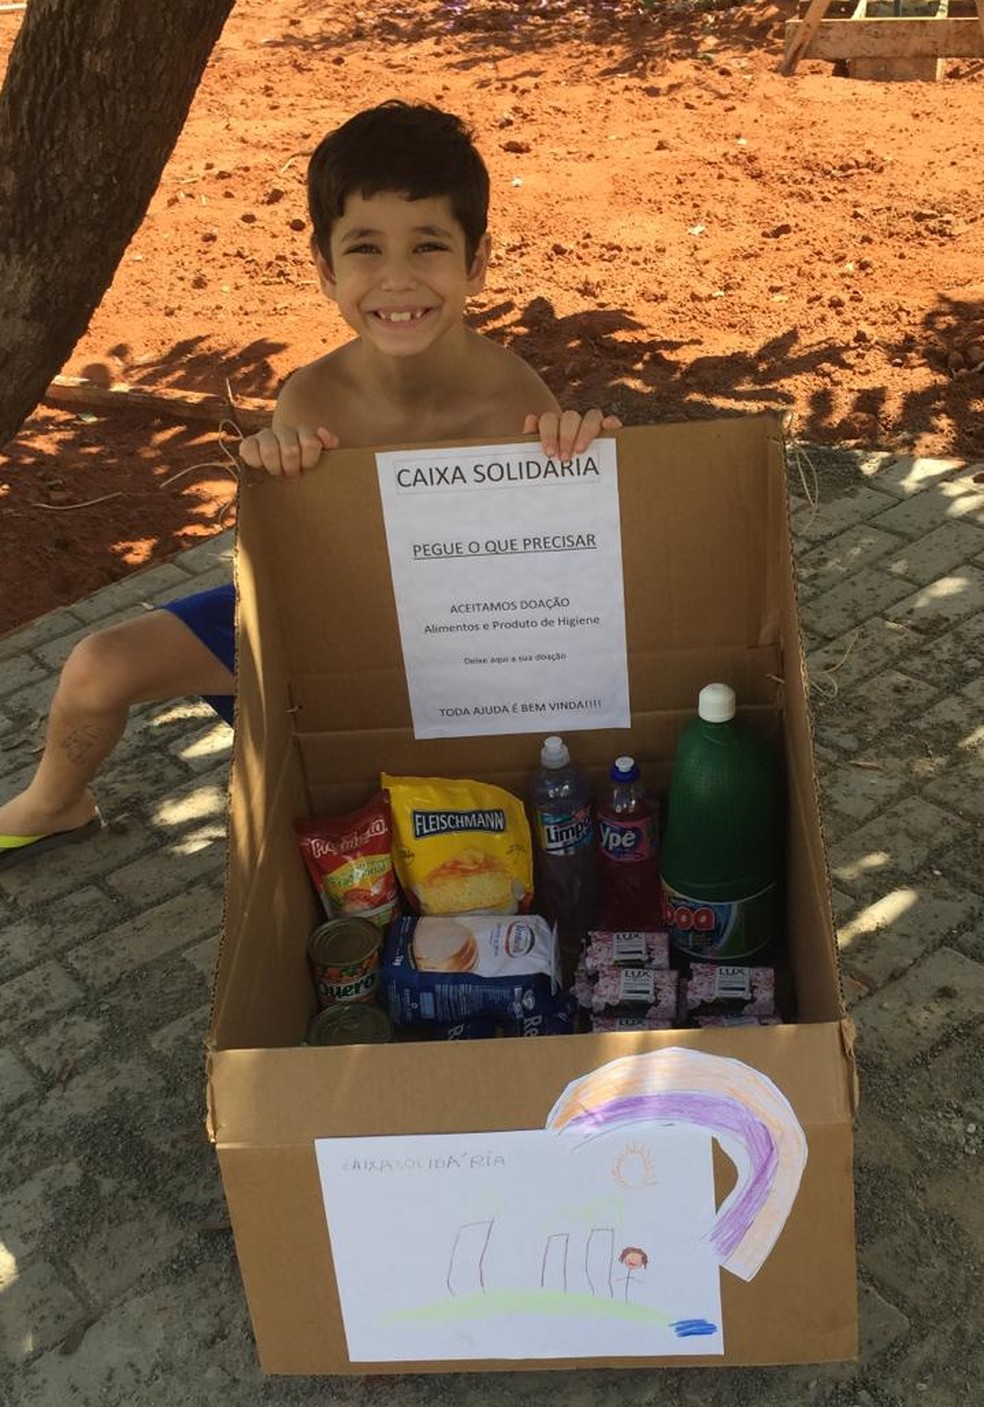 'Caixa solidária' idealizada por menino de Bauru ajuda moradores de rua em tempos de coronavírus — Foto: Arquivo Pessoal/Carlos Ruiz